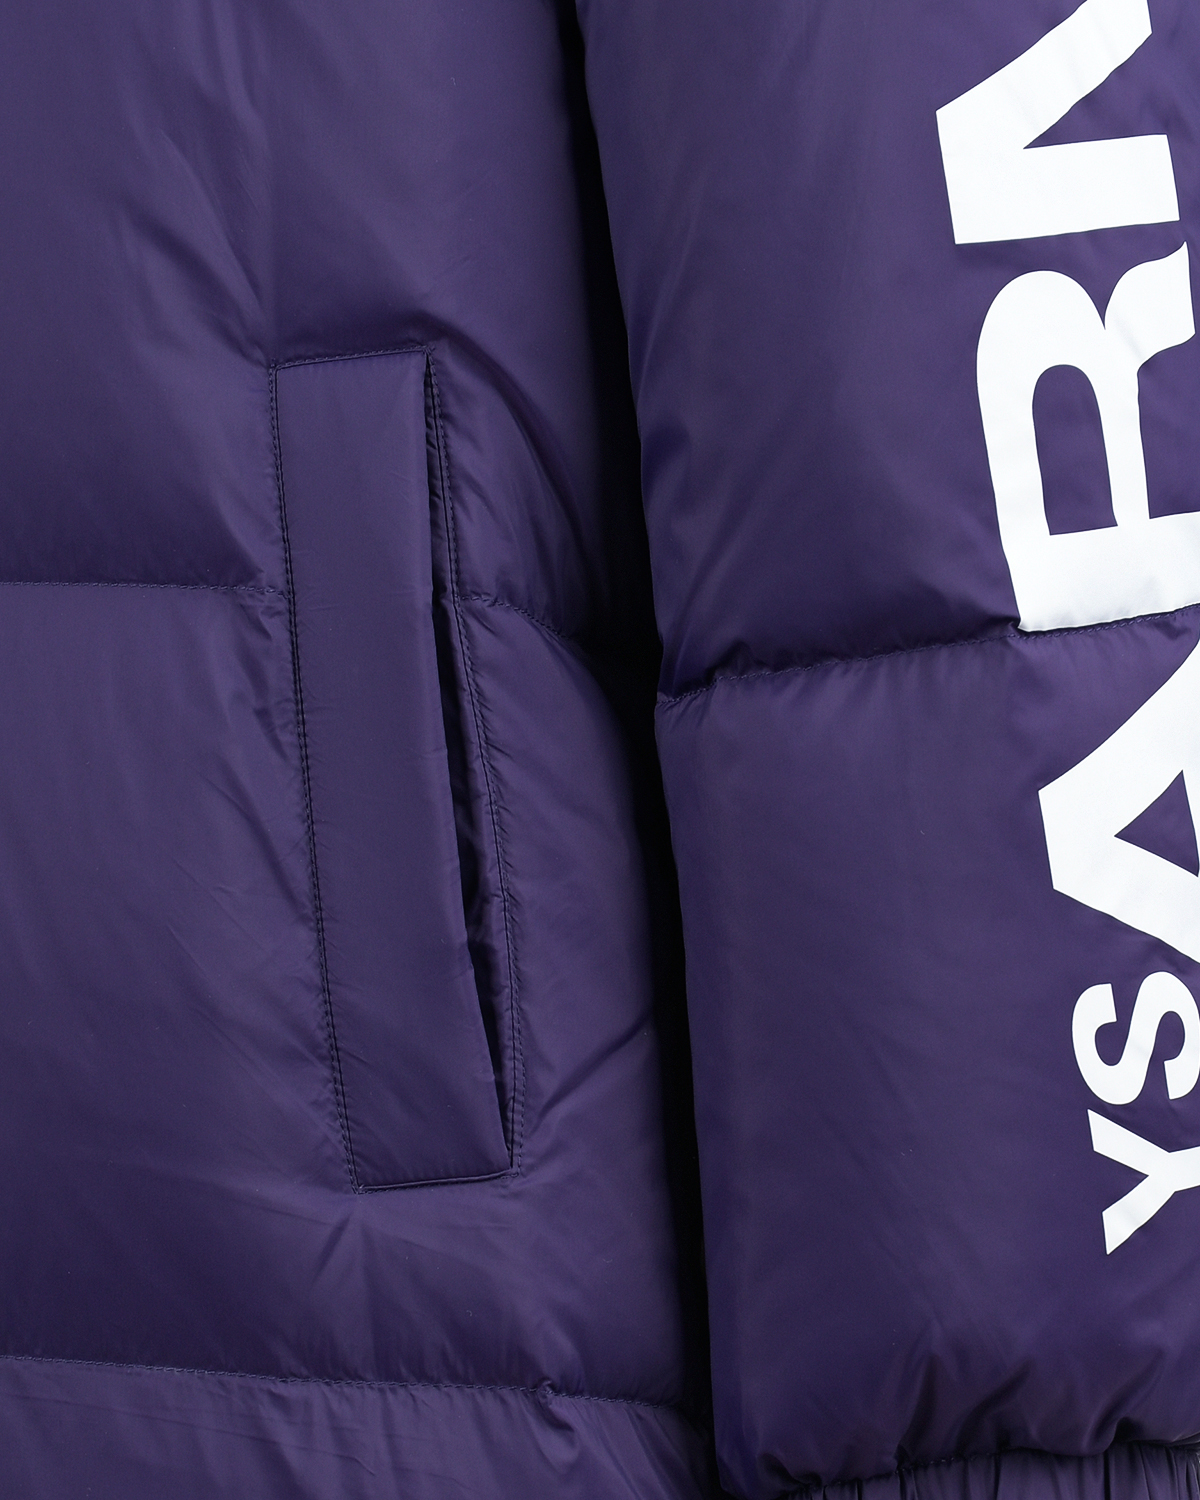 Двухстороннее пальто-пуховик, фиолетовый/сиреневый Yves Salomon, размер 38, цвет нет цвета Двухстороннее пальто-пуховик, фиолетовый/сиреневый Yves Salomon - фото 9